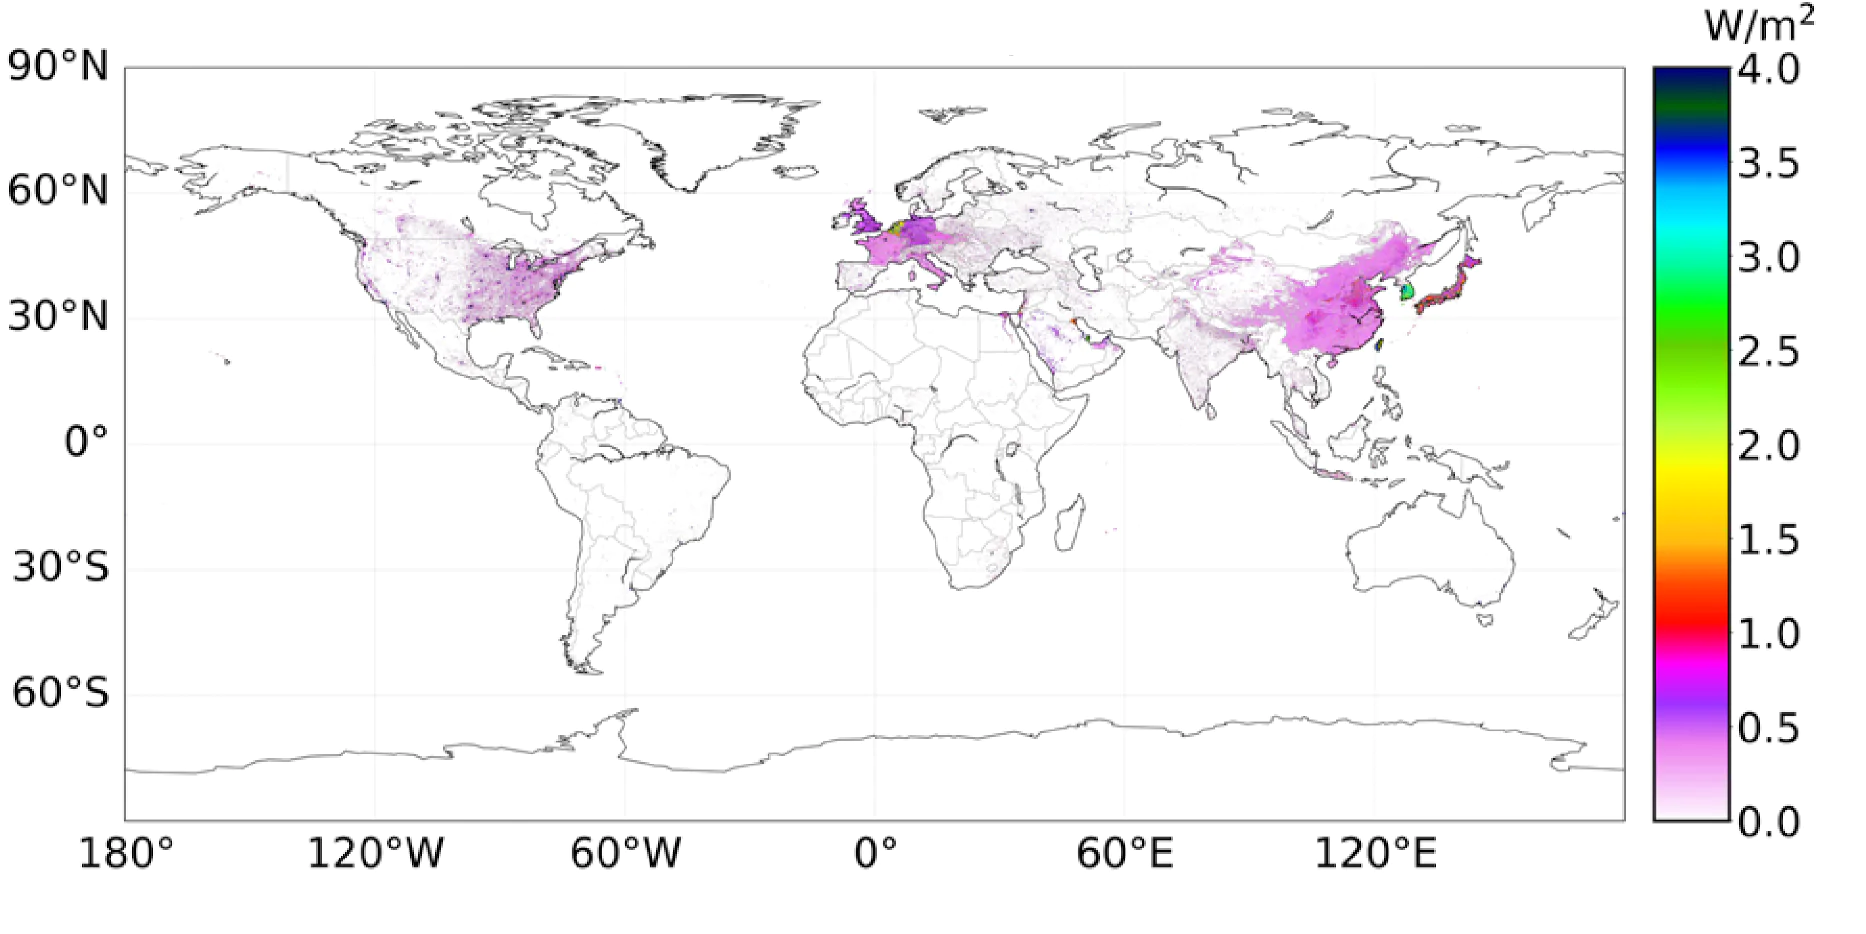 Ciepło antropogeniczne: mapa strumienia ciepła antropogenicznego na świecie.